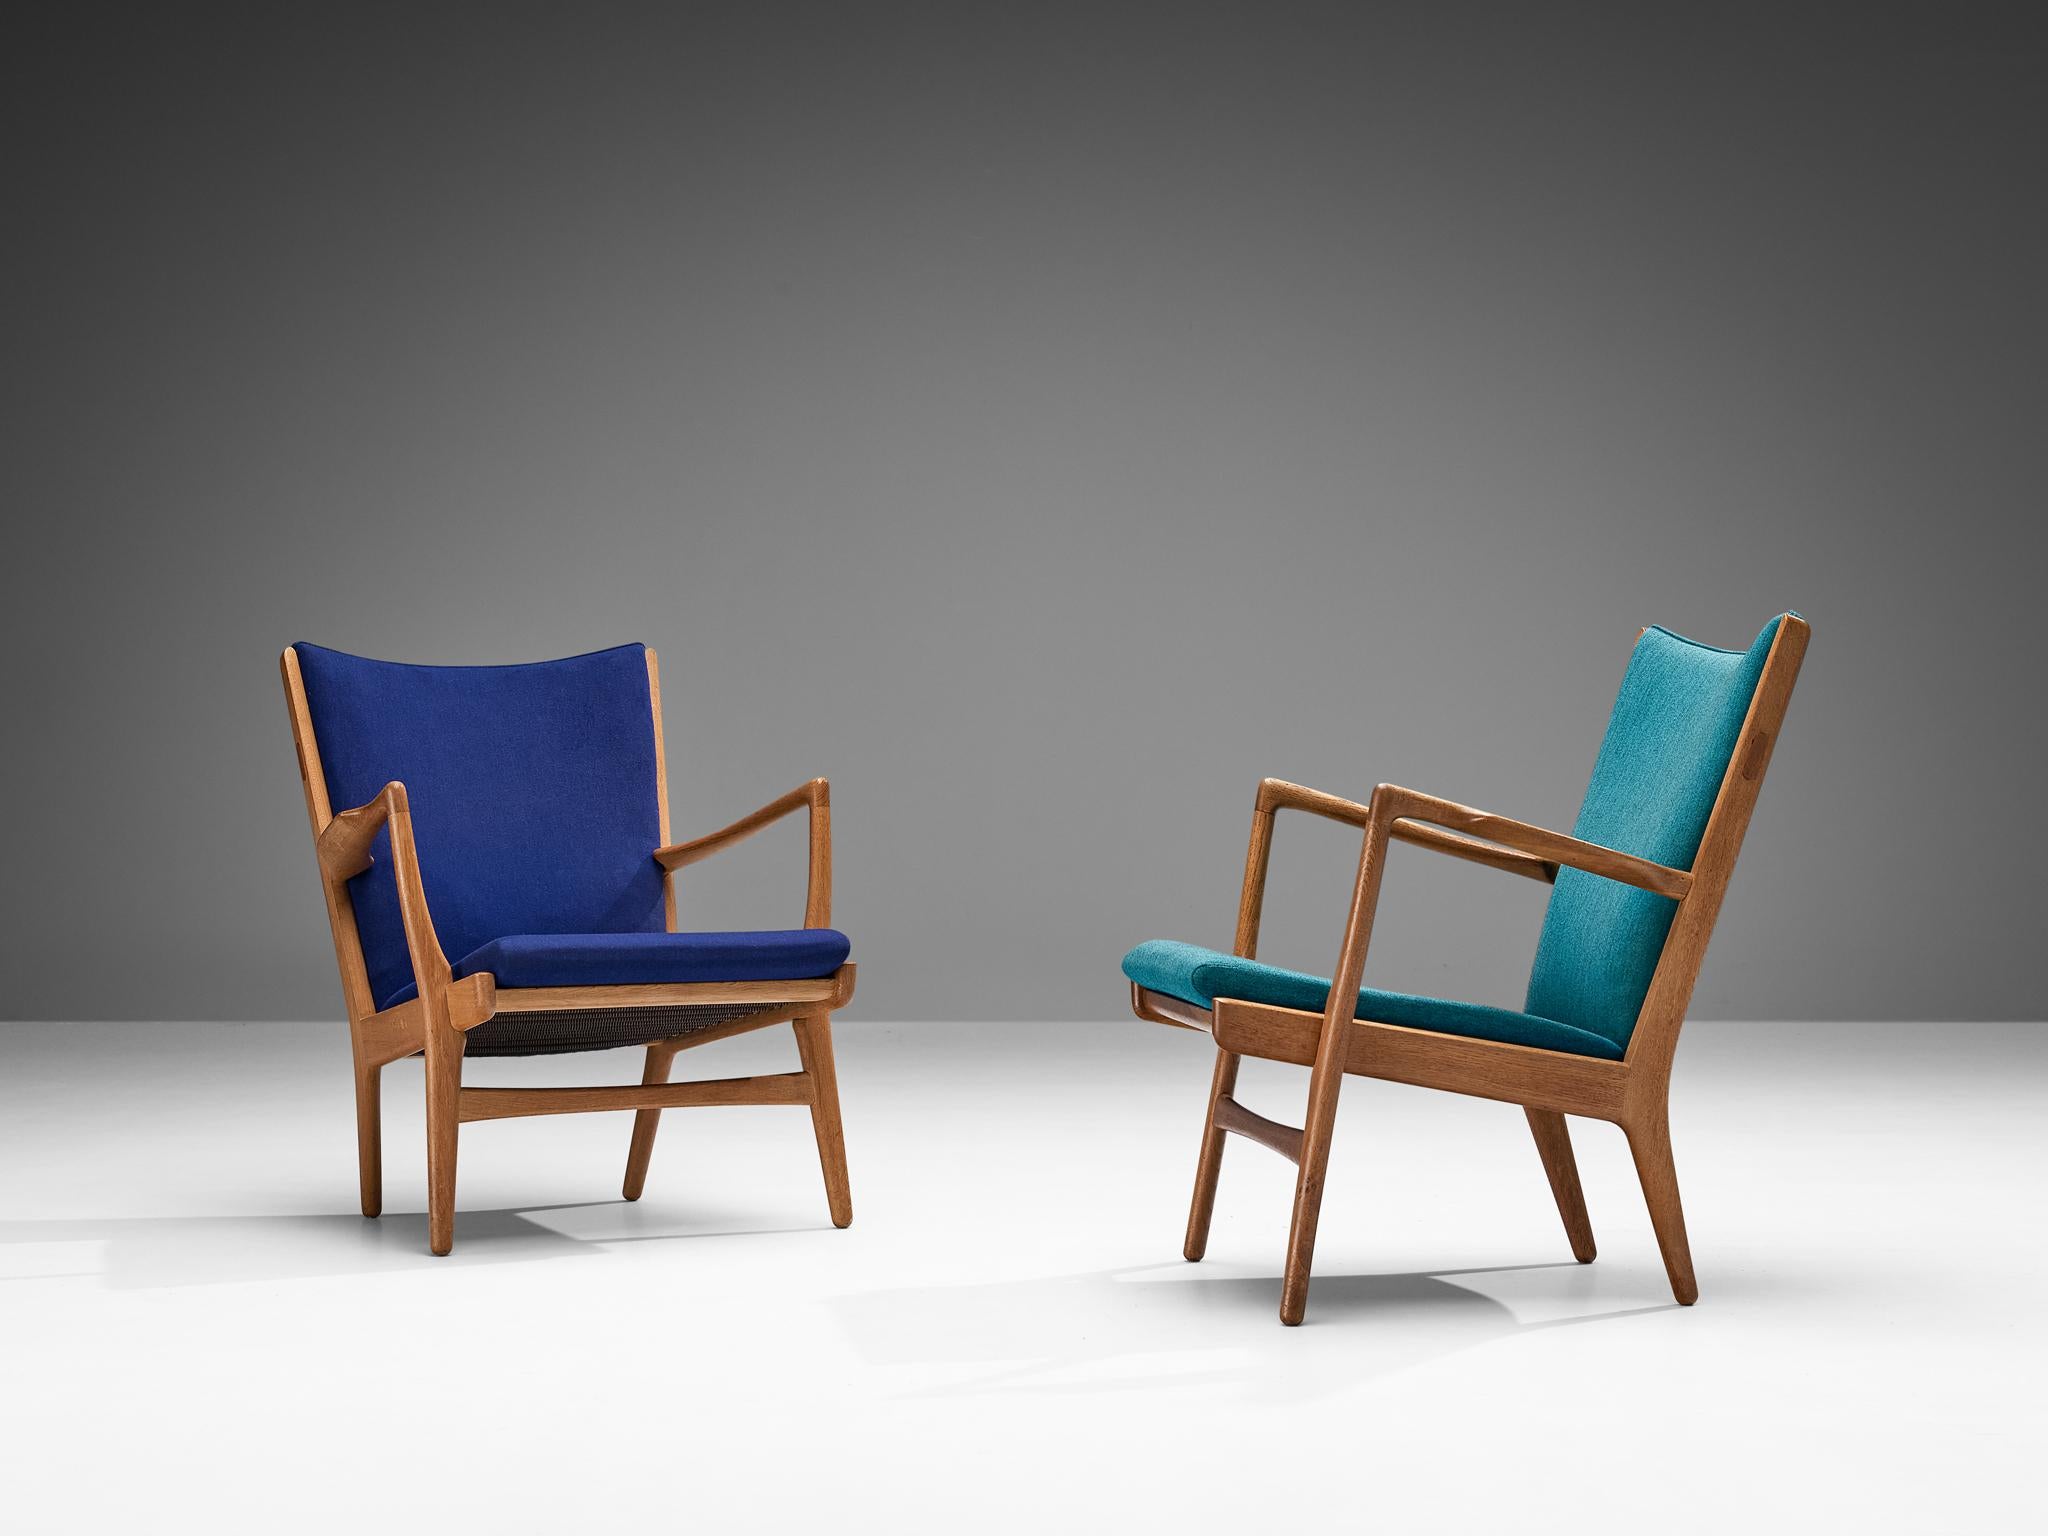 Hans J. Wegner pour AP Stolen, paire de chaises longues, modèle 'AP-16', tissu, chêne, Danemark, 1951.

Paire de fauteuils avec structure en chêne conçus par le maître danois Hans J. Wegner. Ce modèle est produit par AP Stolen en petit nombre et